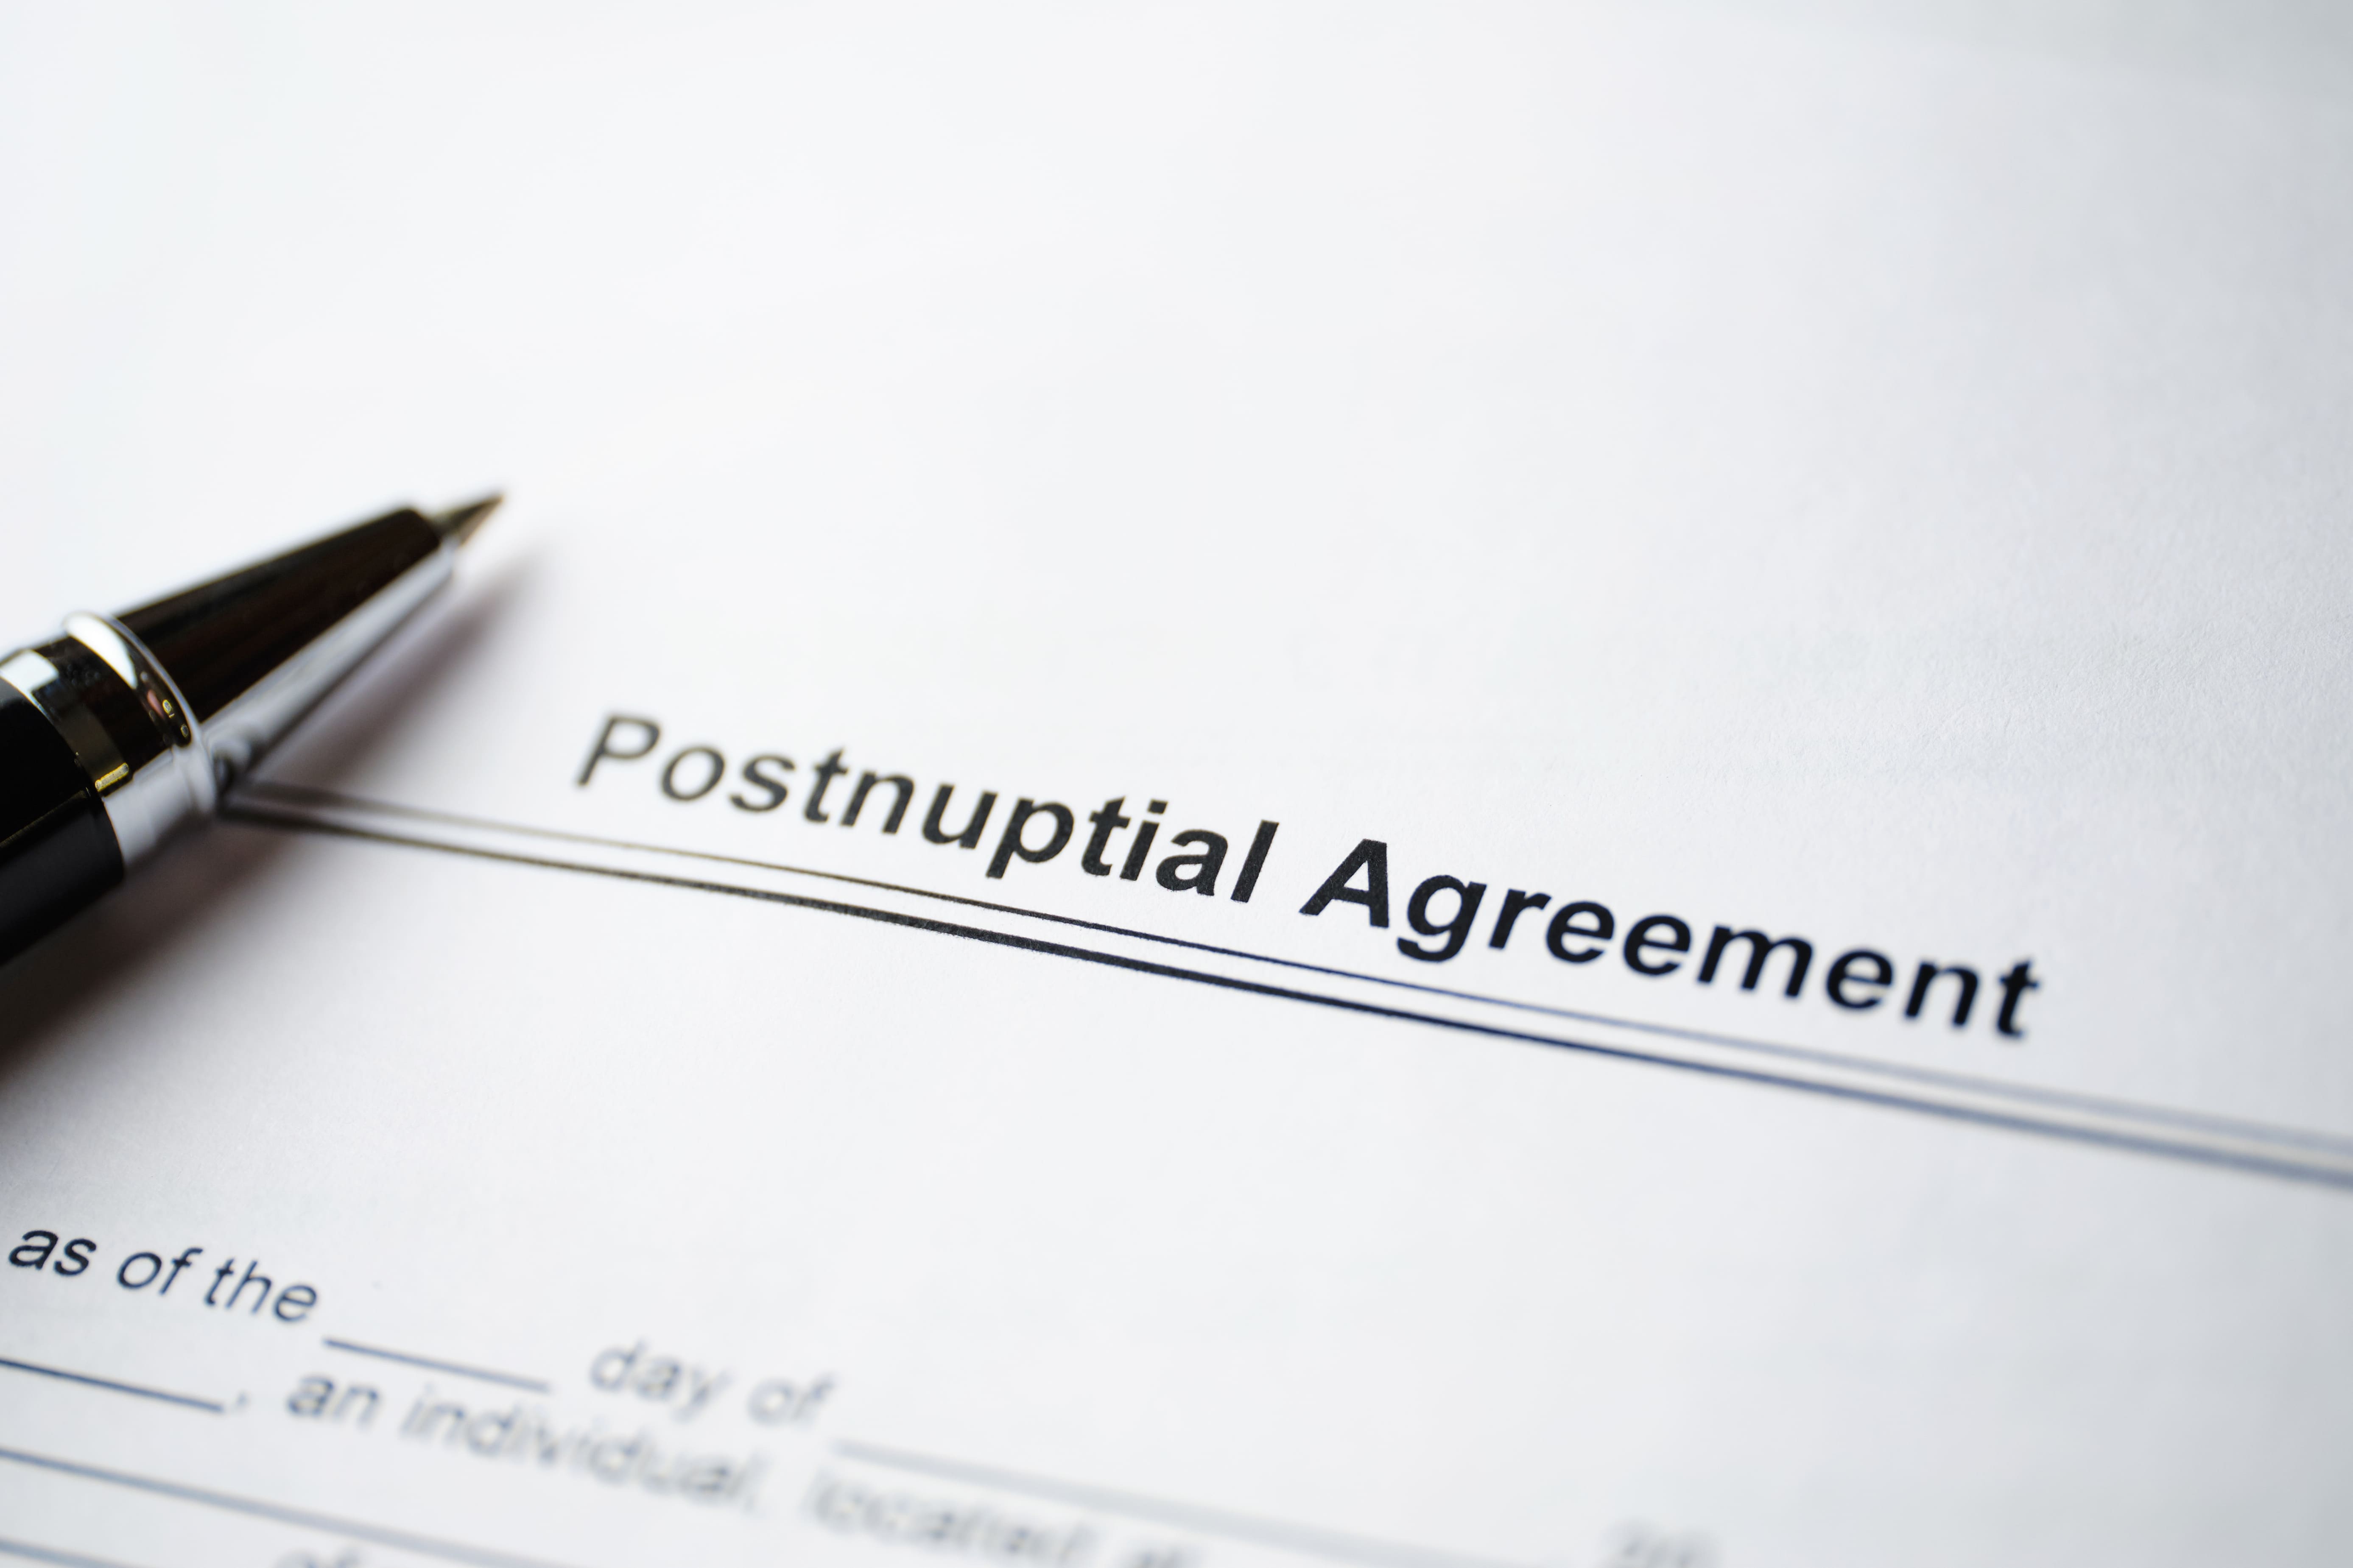 Post-Nuptial Agreements in Kenya